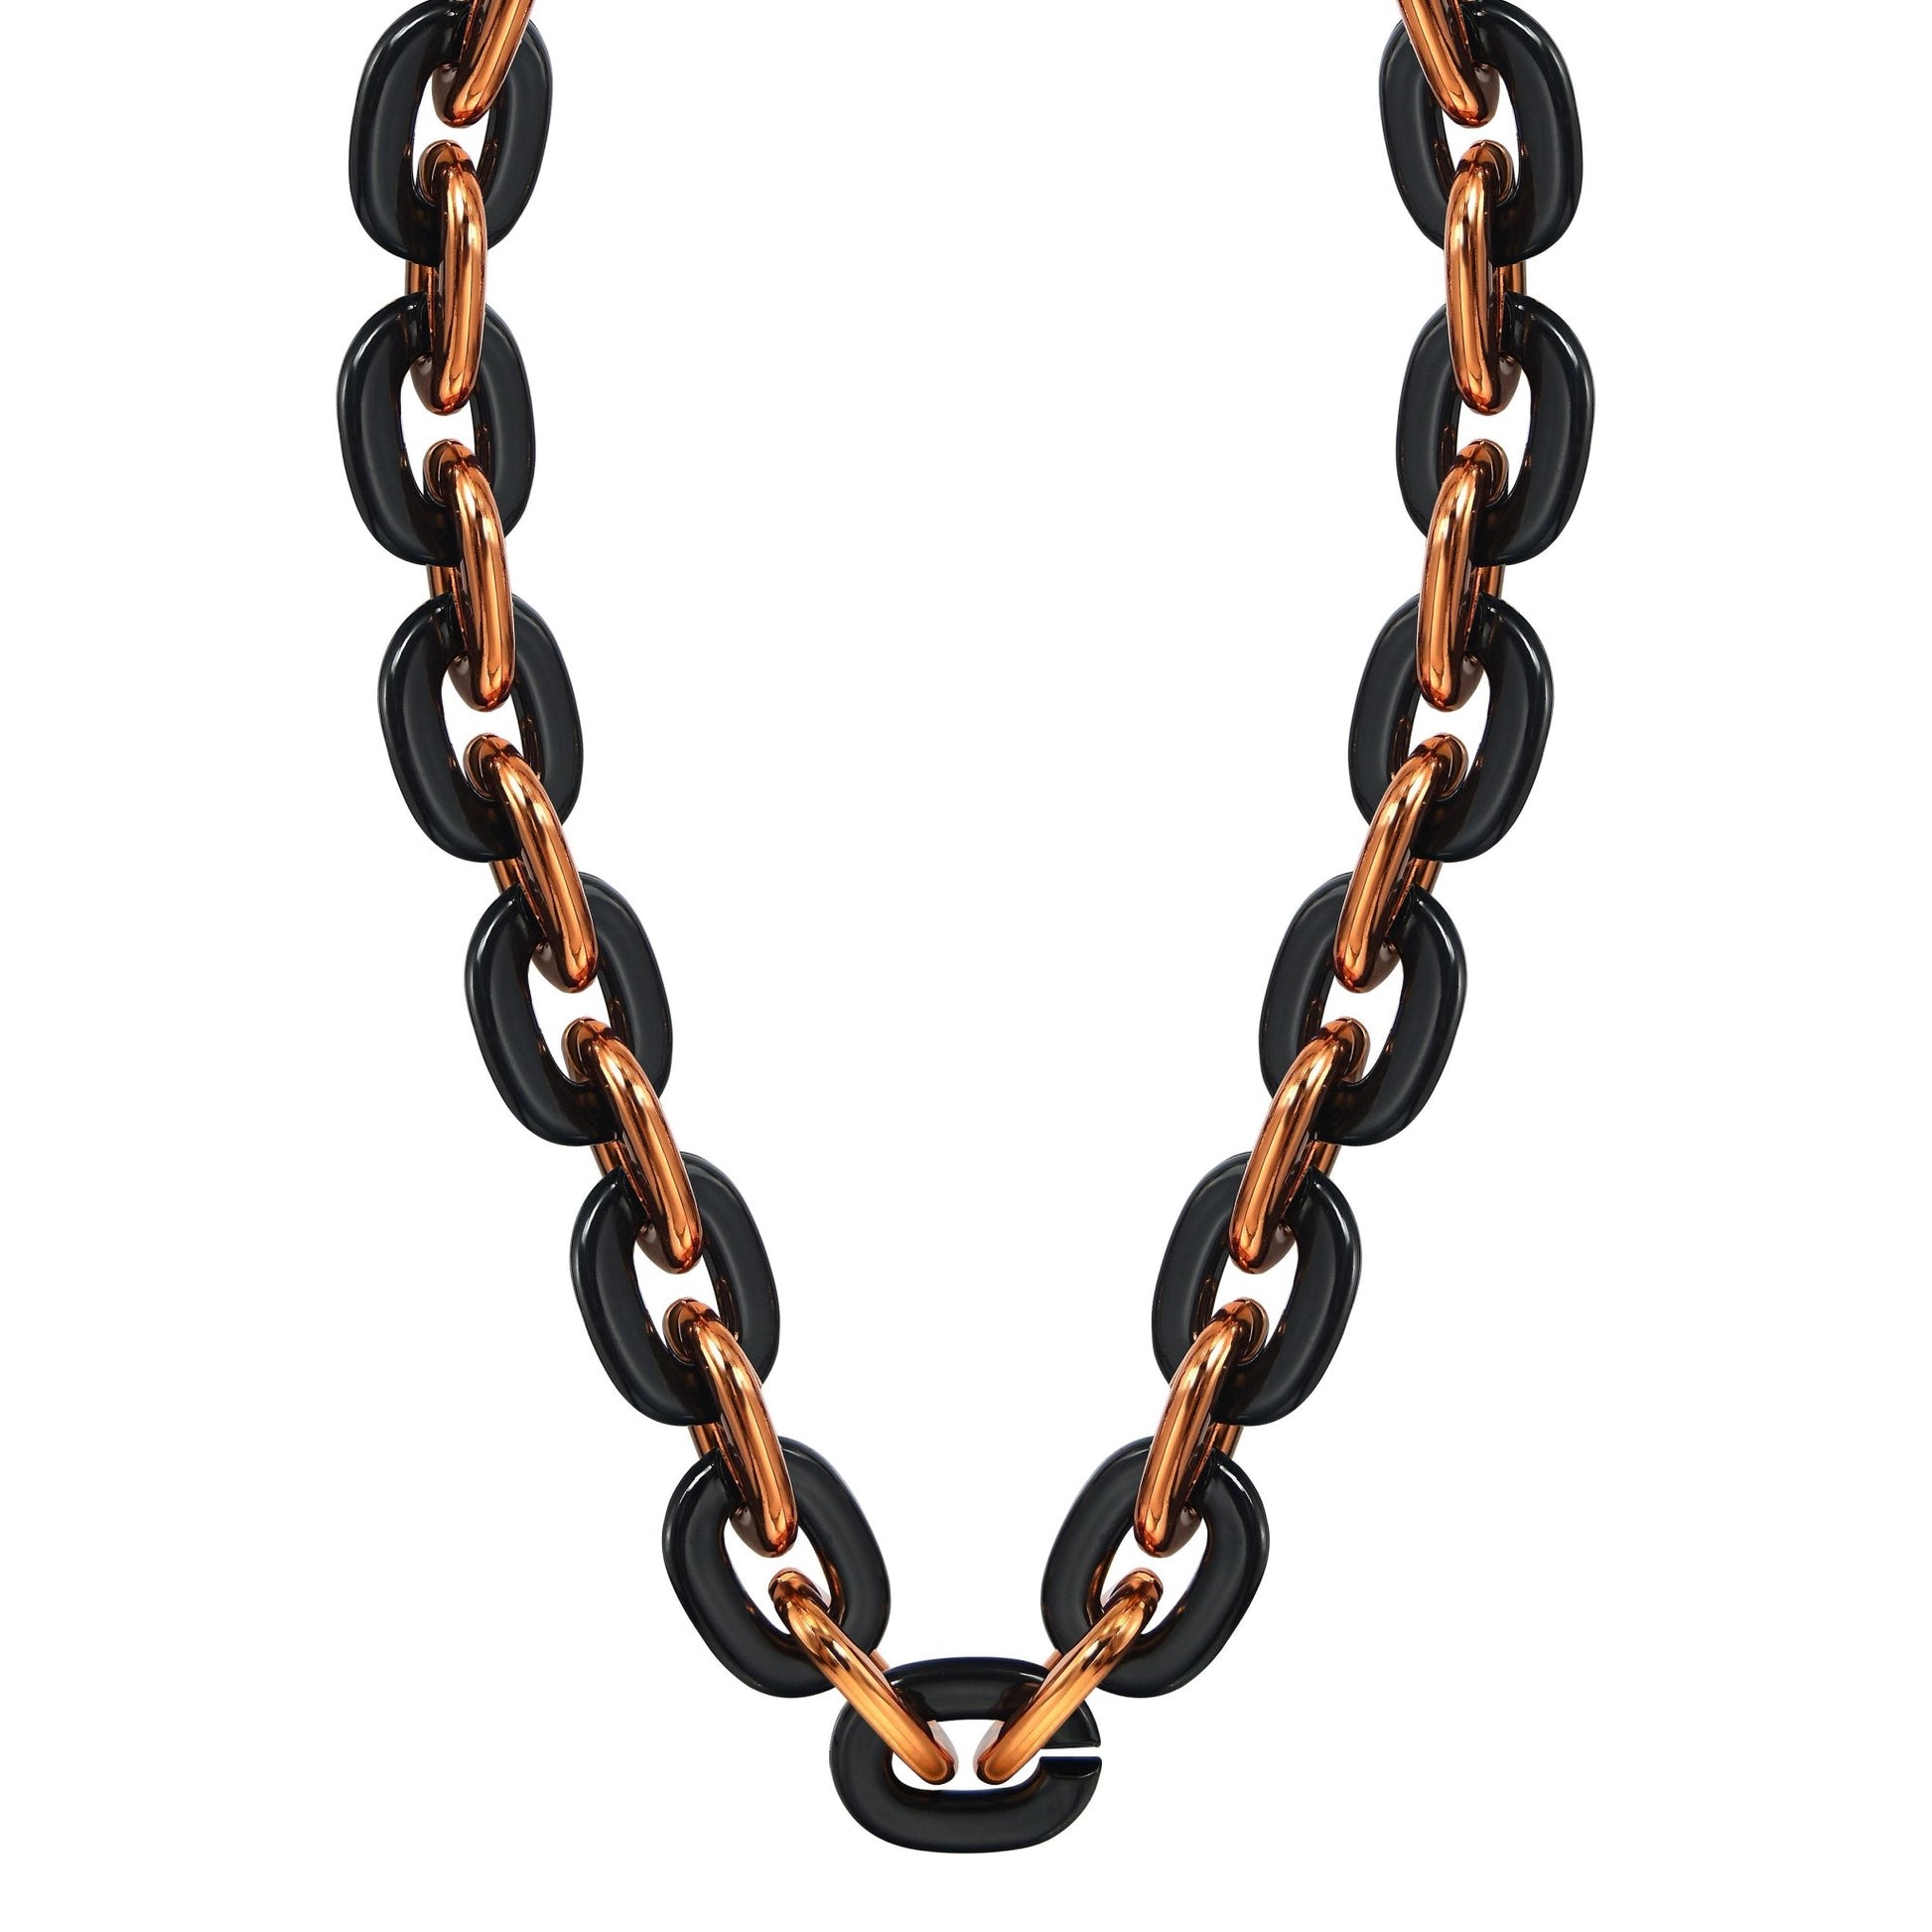 Jumbo Fan Chain Necklace - Gamedays Gear - Black / Orange